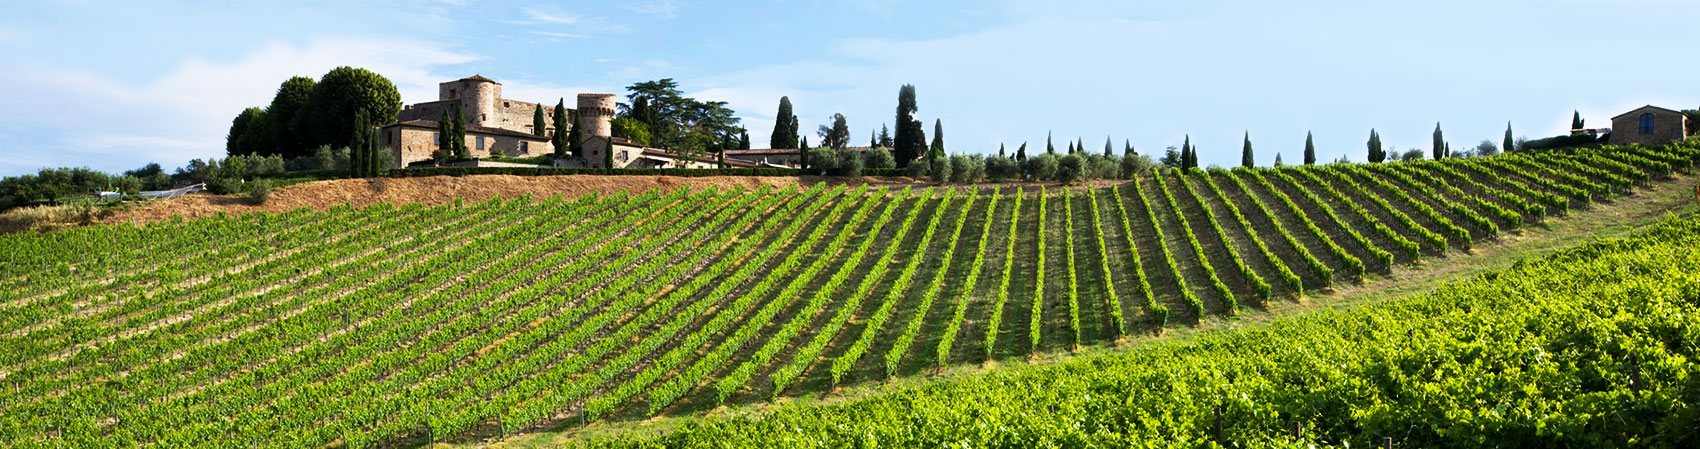 Chianti, Toscana: Vista de un viñedo